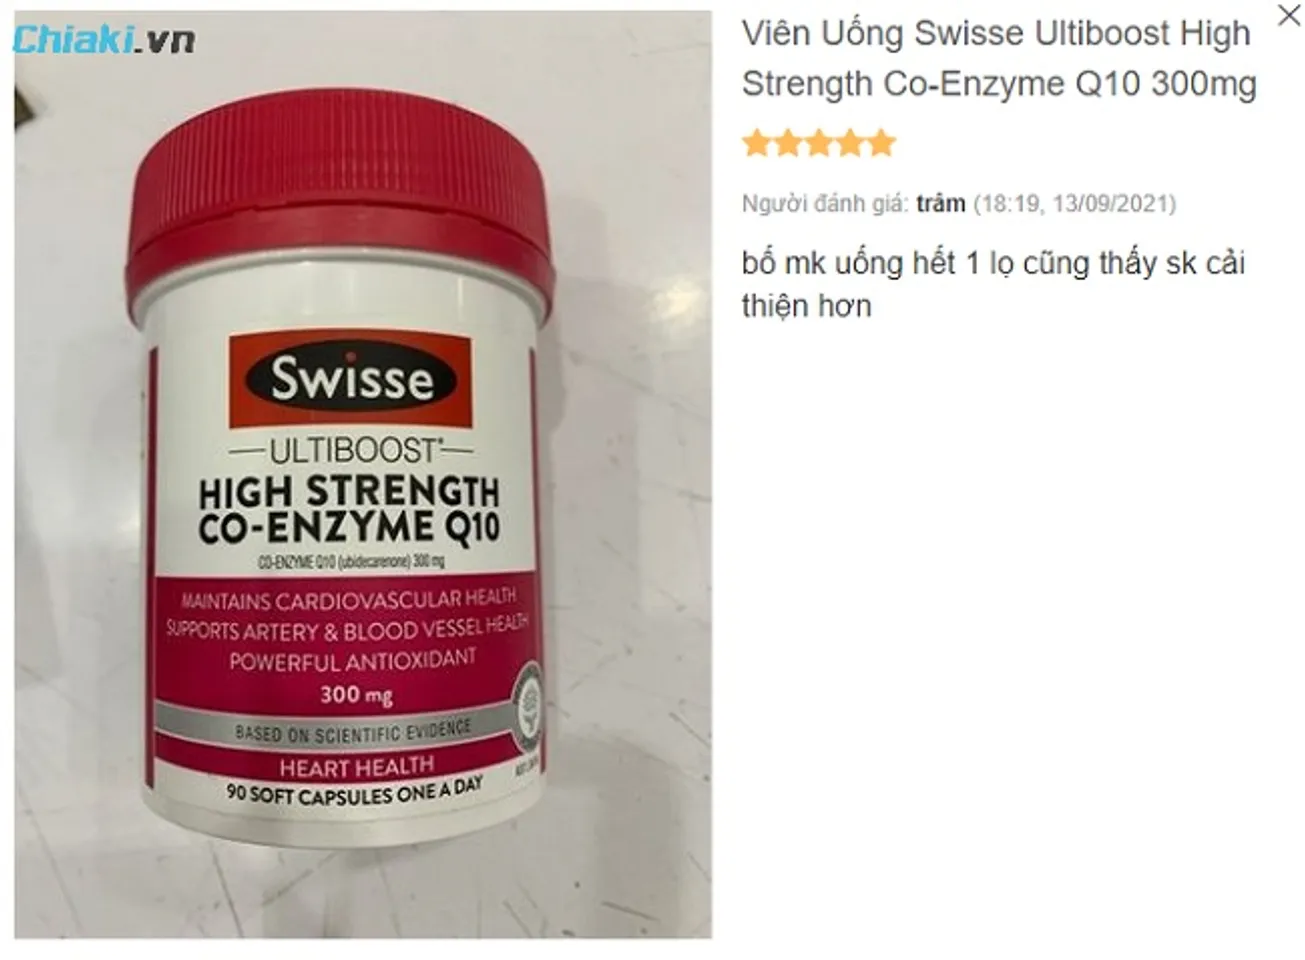 Review viên uống Swisse Ultiboost High Strength Co-Enzyme từ người dùng